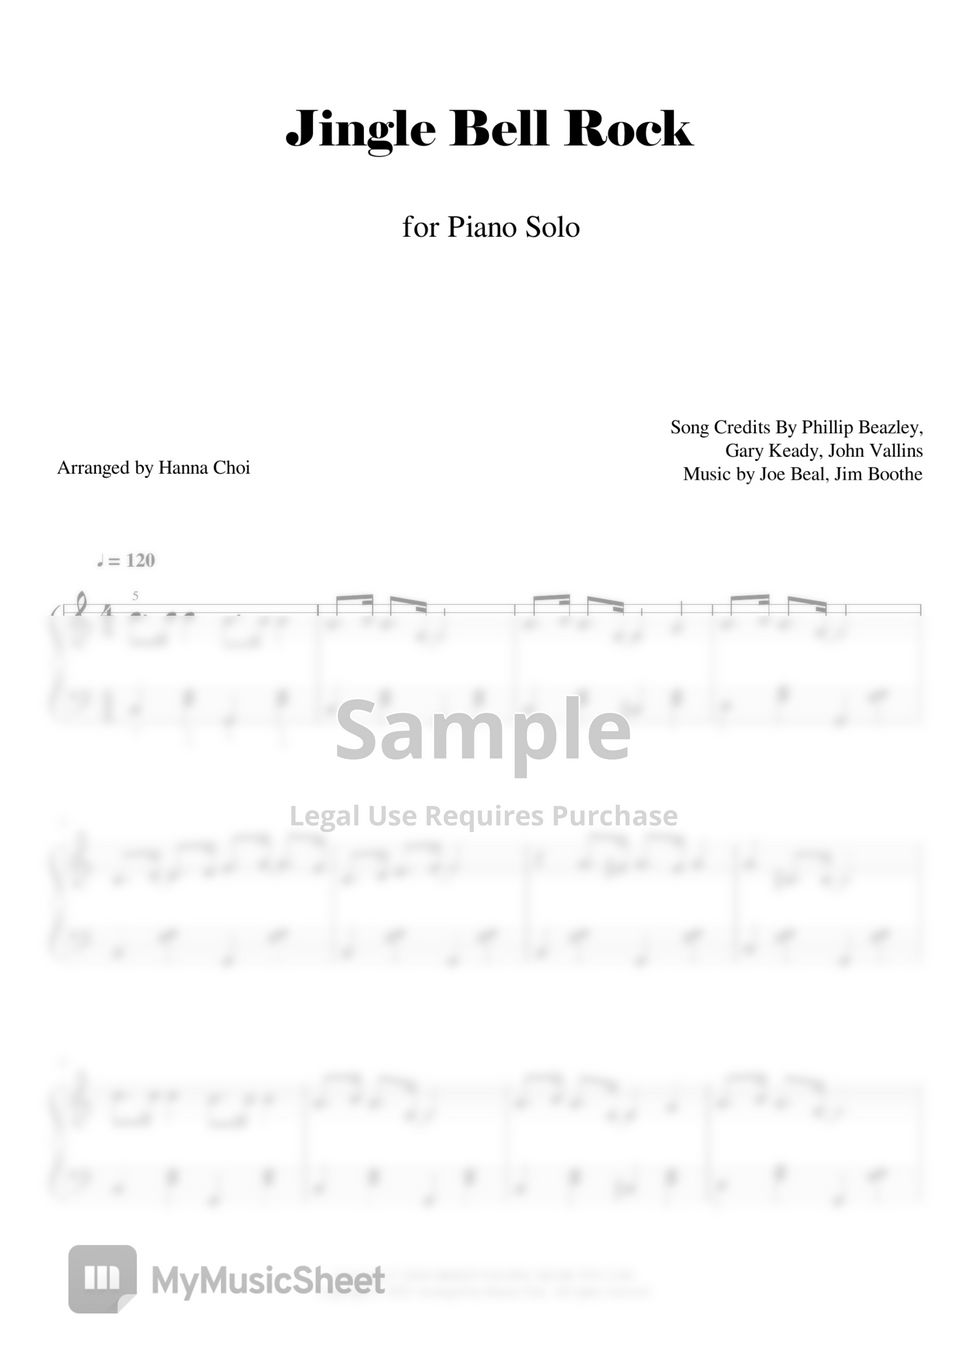 바비헬름스 - 징글벨 락 Jingle Bell Rock - 크리스마스 캐롤 (piano solo) by YANGCHO